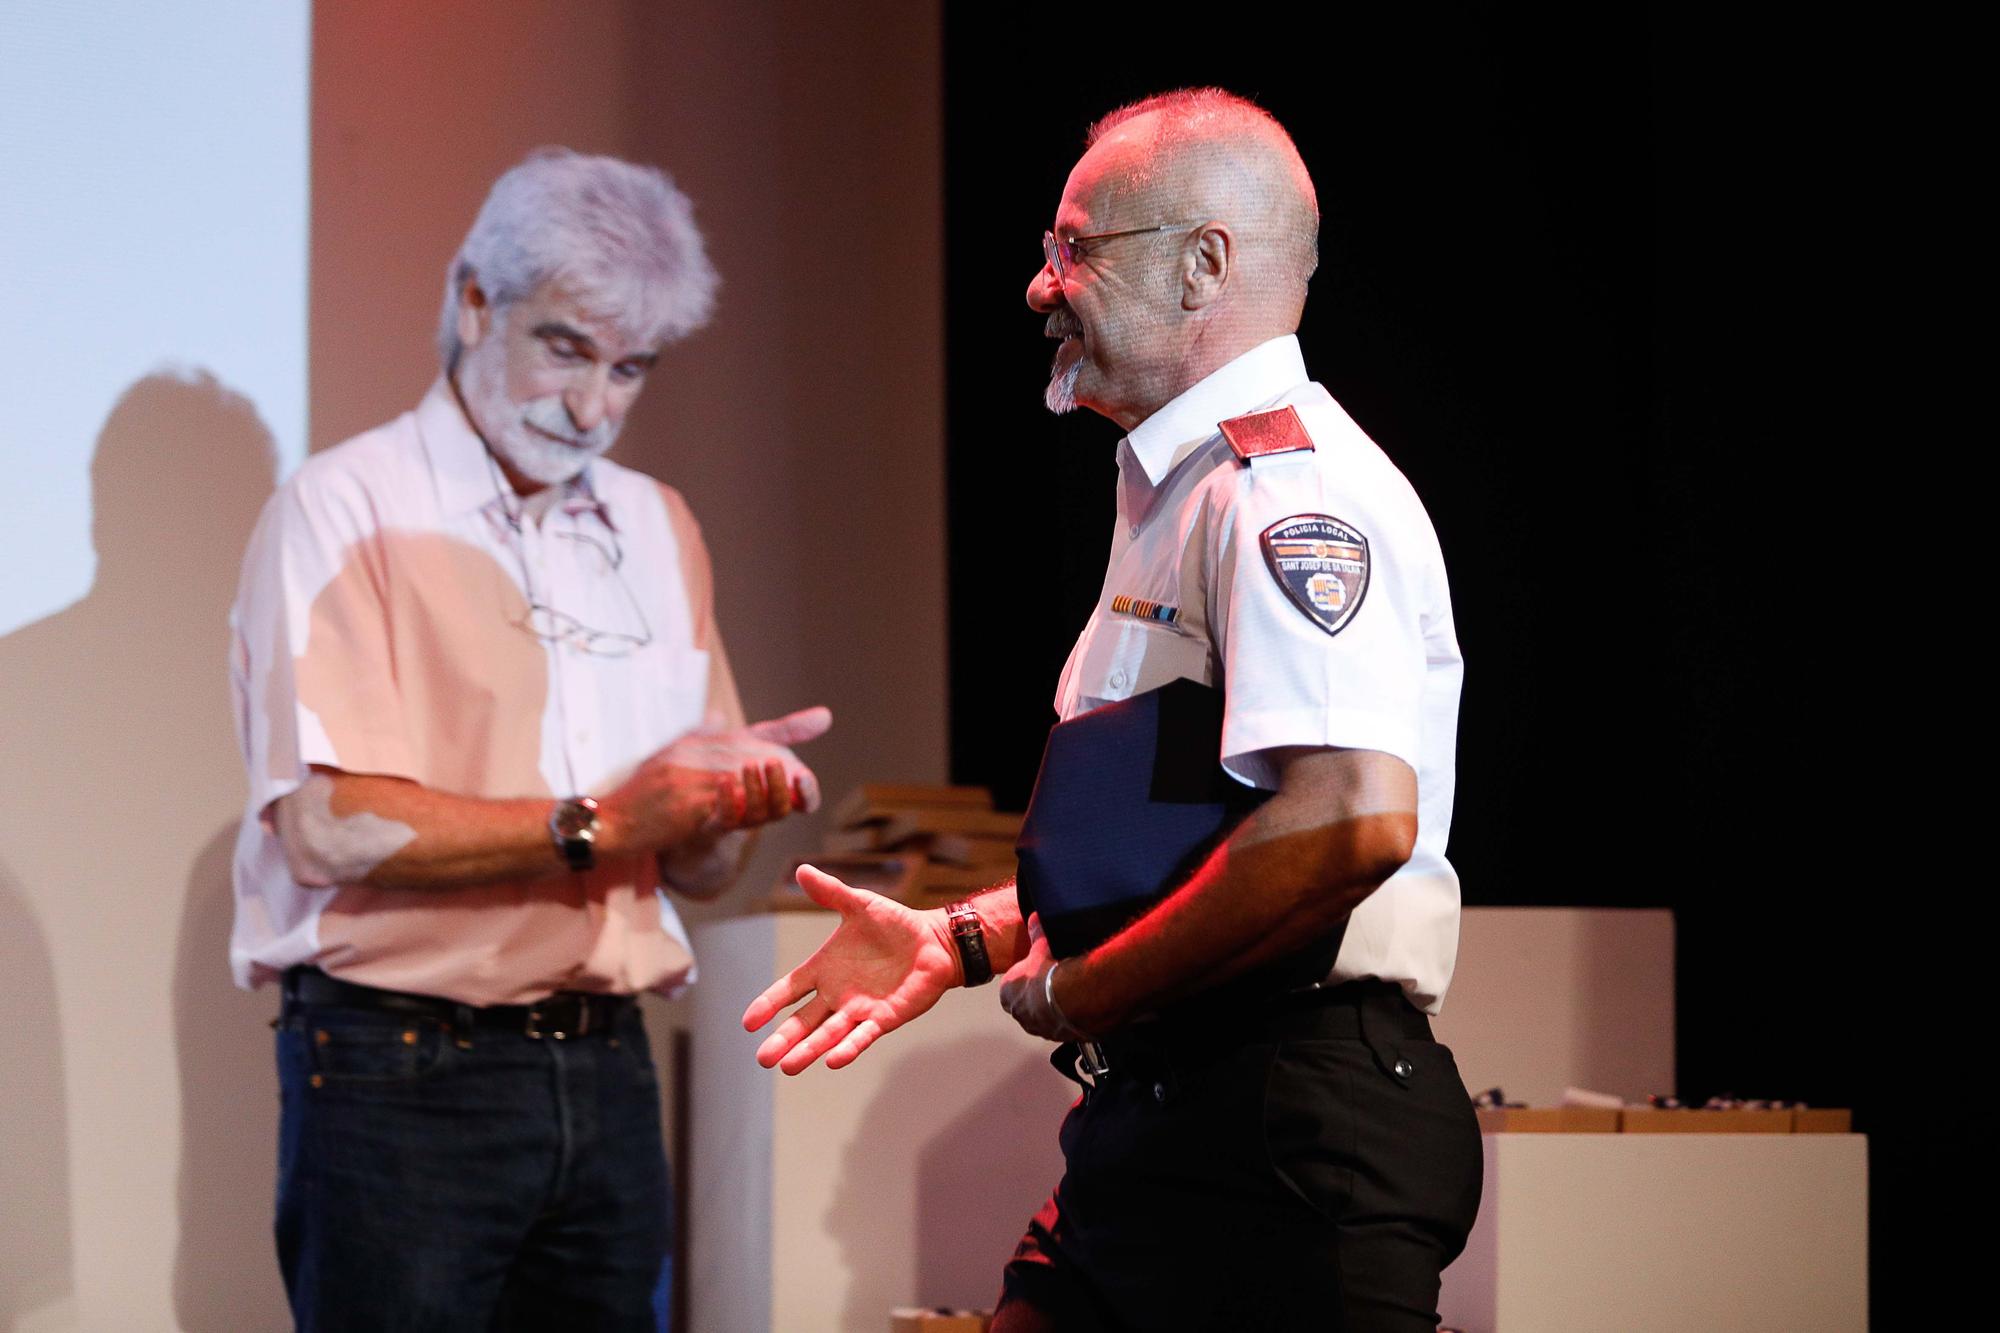 Medallas a 30 años de servicio en las policías locales de Ibiza